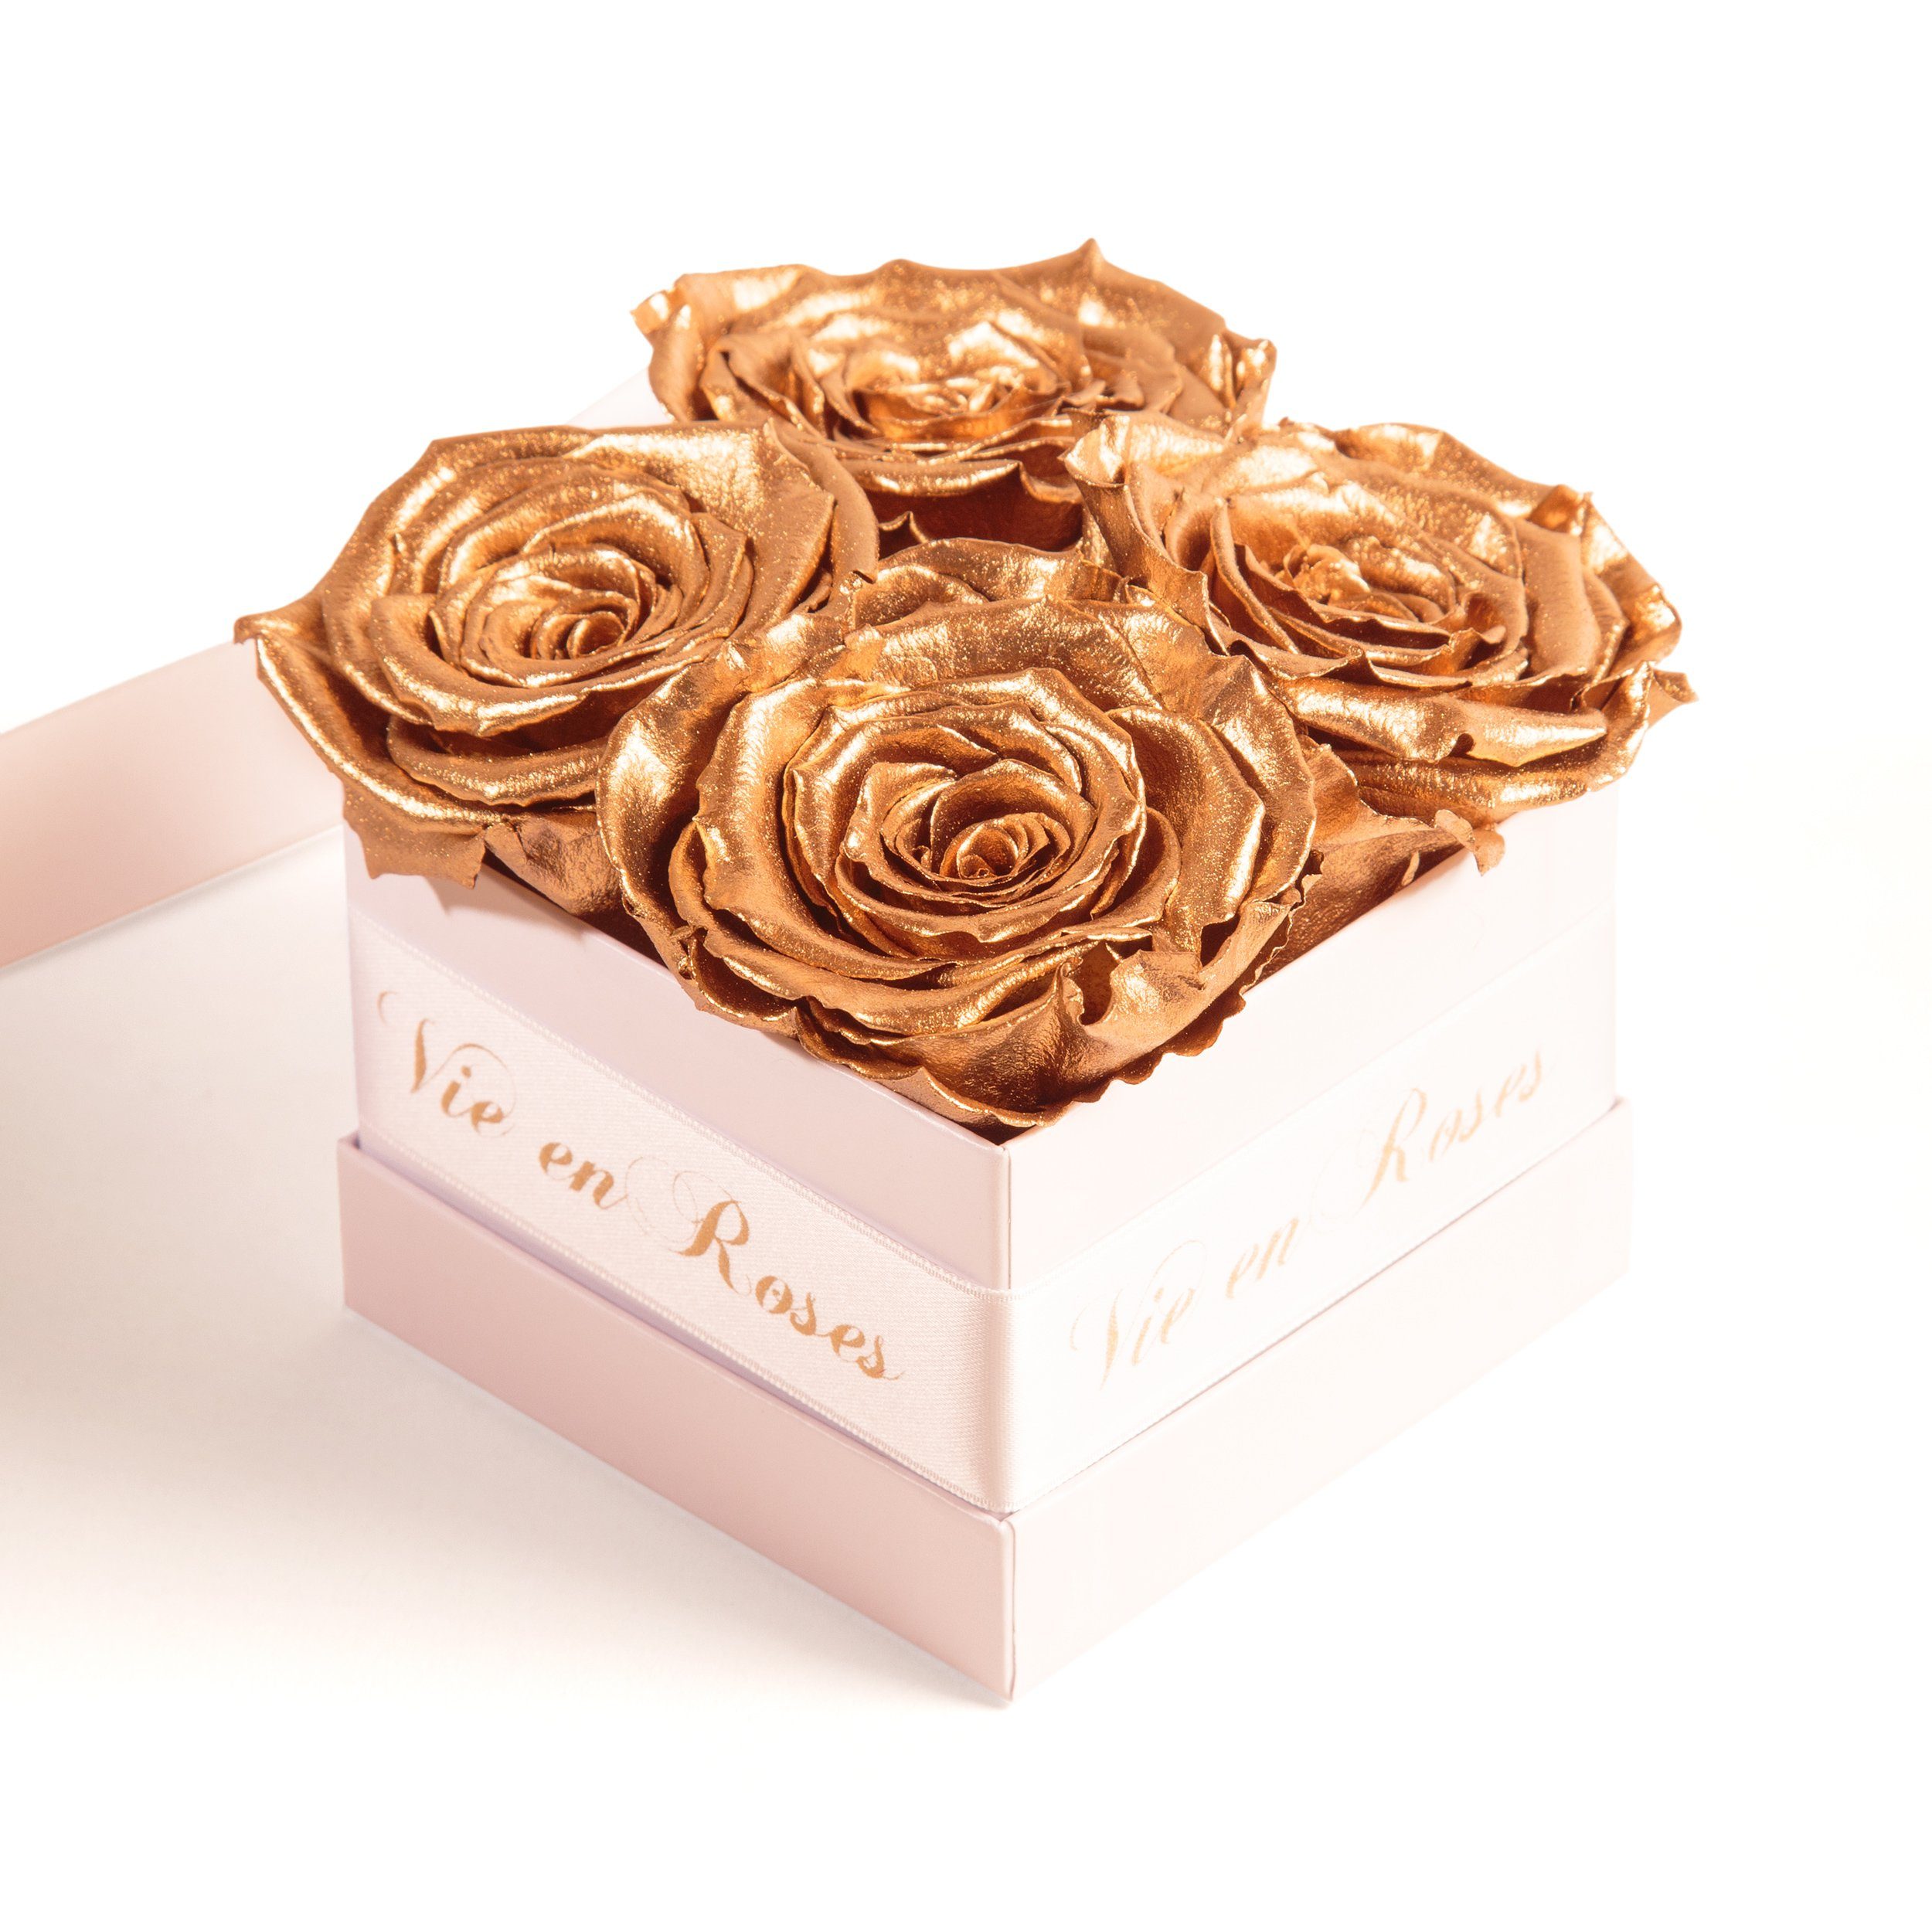 Damen Infinity Deko für Valentinstag Heidelberg, gold Rosen Geschenk cm, Kunstblume ROSEMARIE 8.5 Höhe zum Rose, SCHULZ Rosenbox weiß Poesie für Frauen